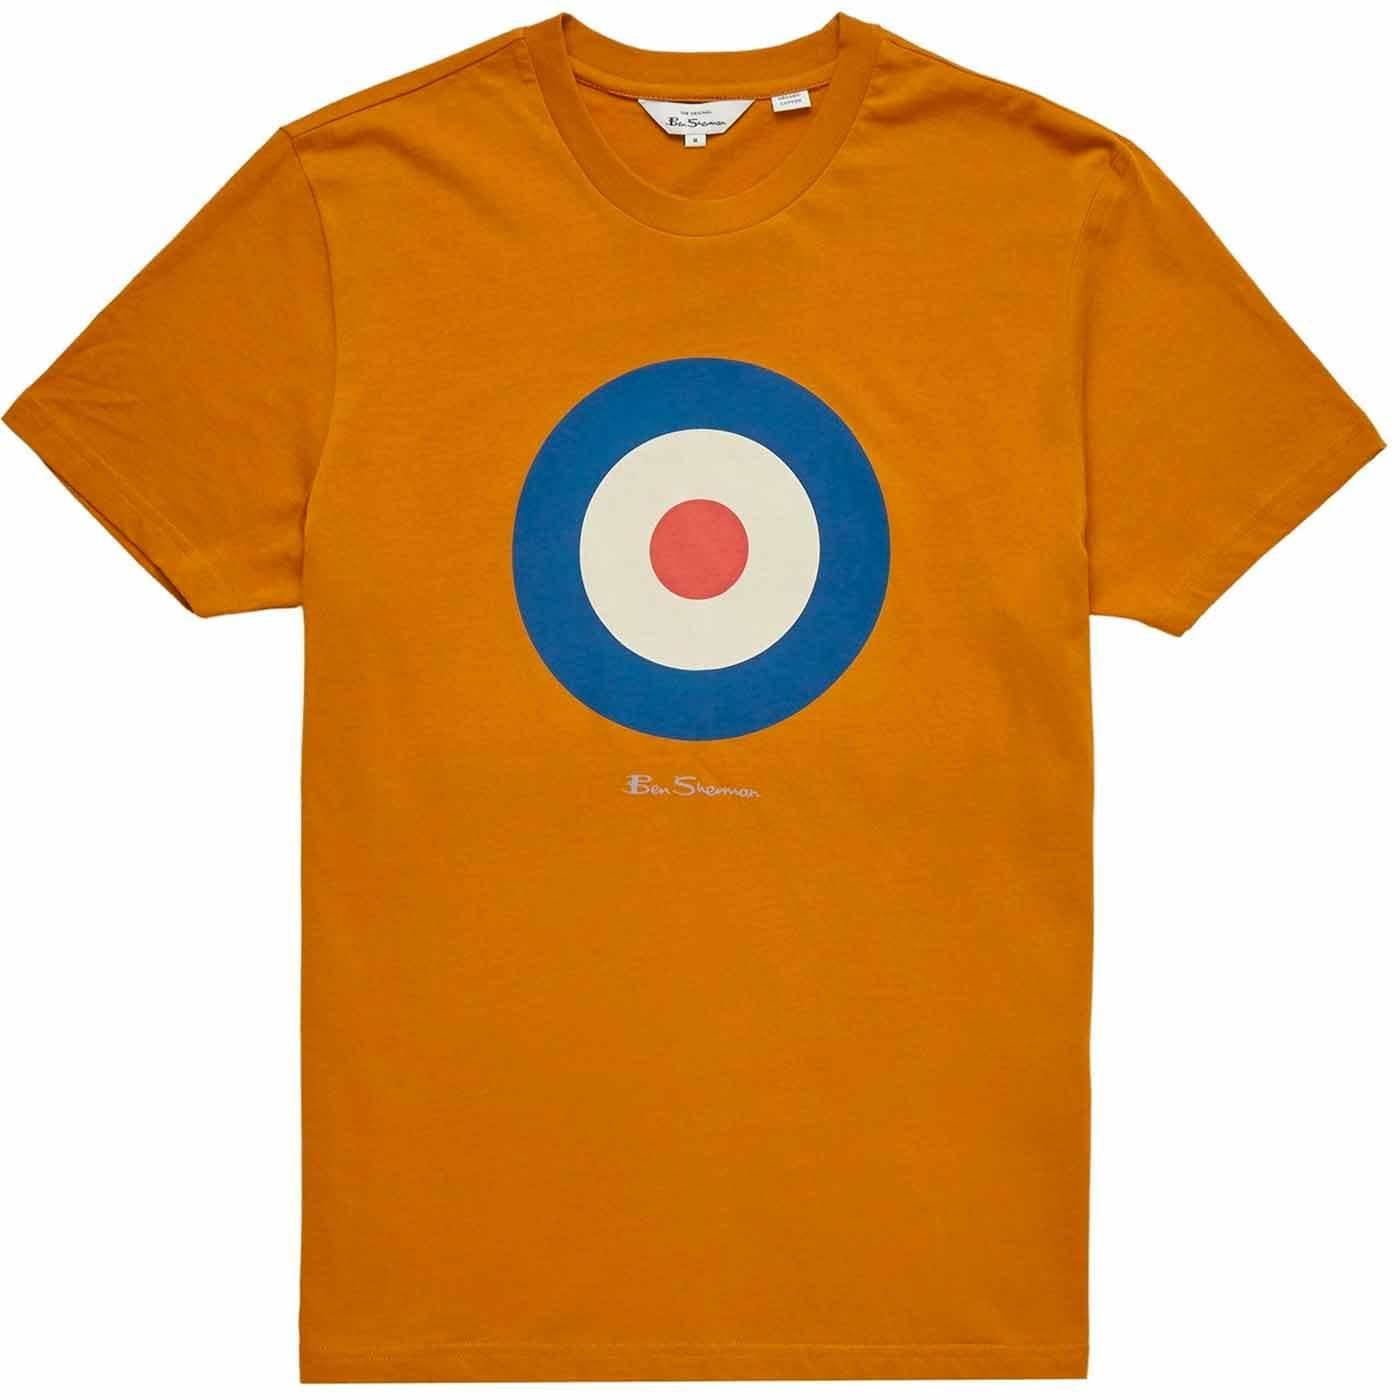 Camiseta BEN SHERMAN 0065093 057 Signature Target Tee ogre - Imagen 1